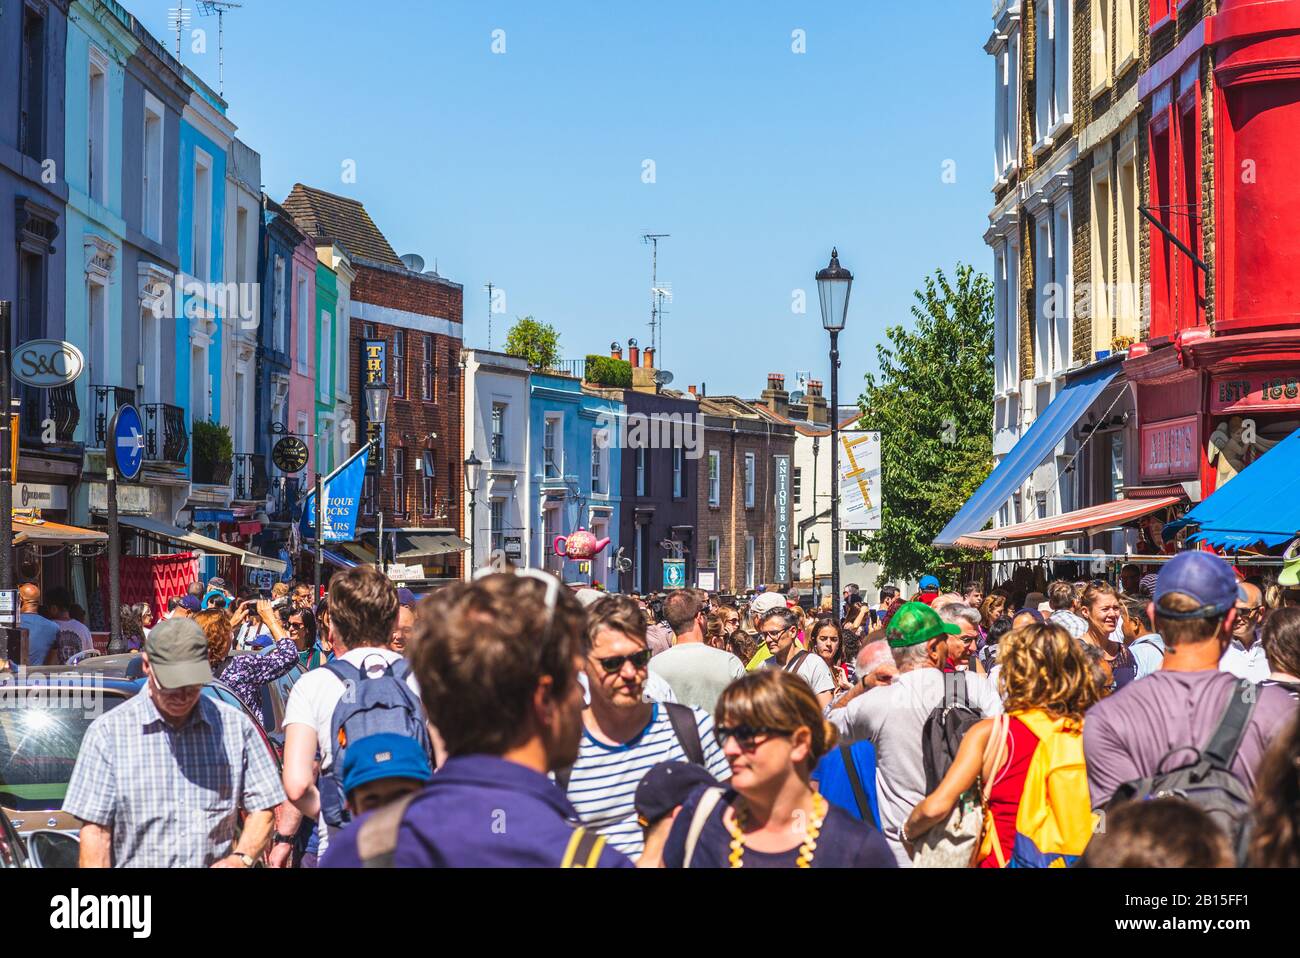 Londra, Regno Unito - 30 giugno 2018: Mercato di Portobello Road, il più grande mercato di antiquariato al mondo che vende ogni tipo di antiquariato e da collezione Foto Stock